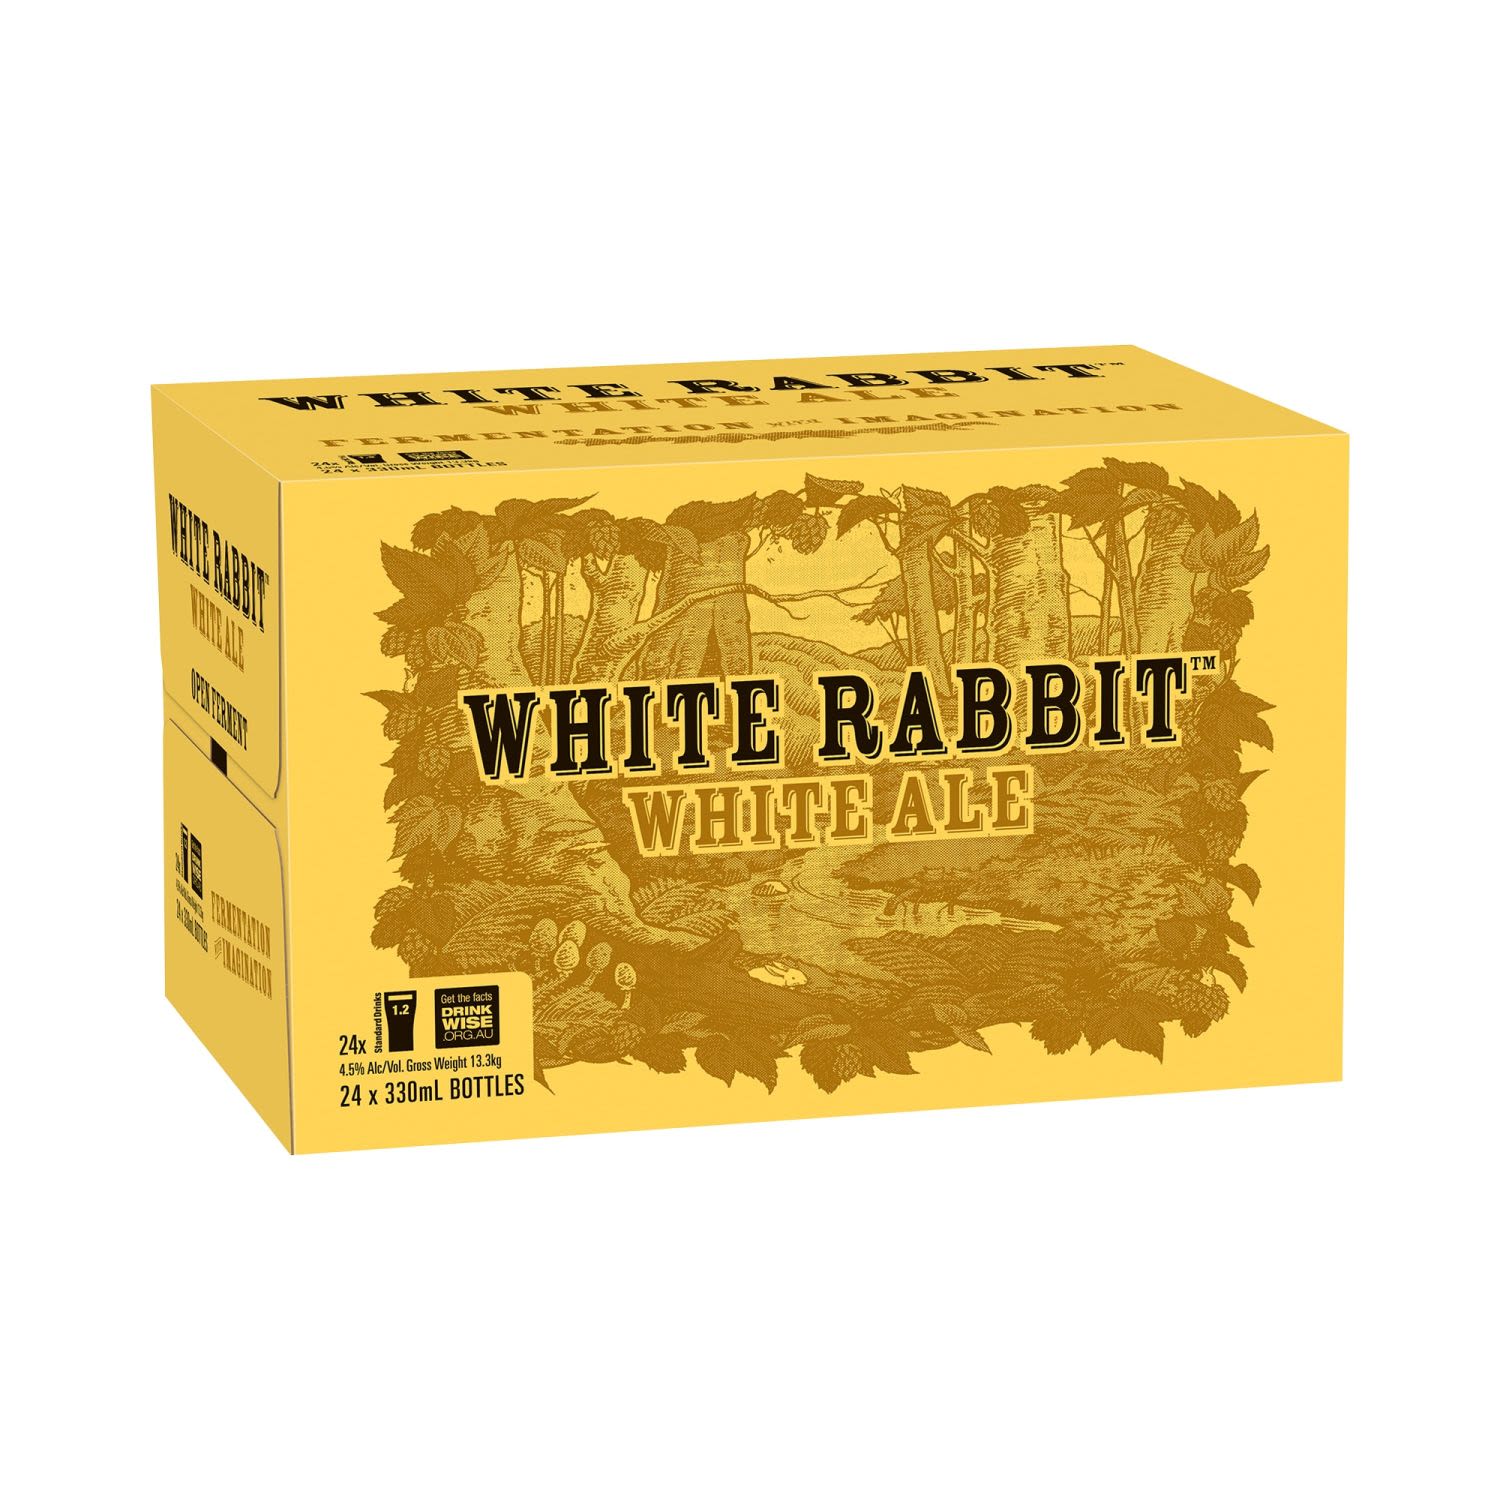 White Rabbit White Ale Bottle 330mL 24 Pack